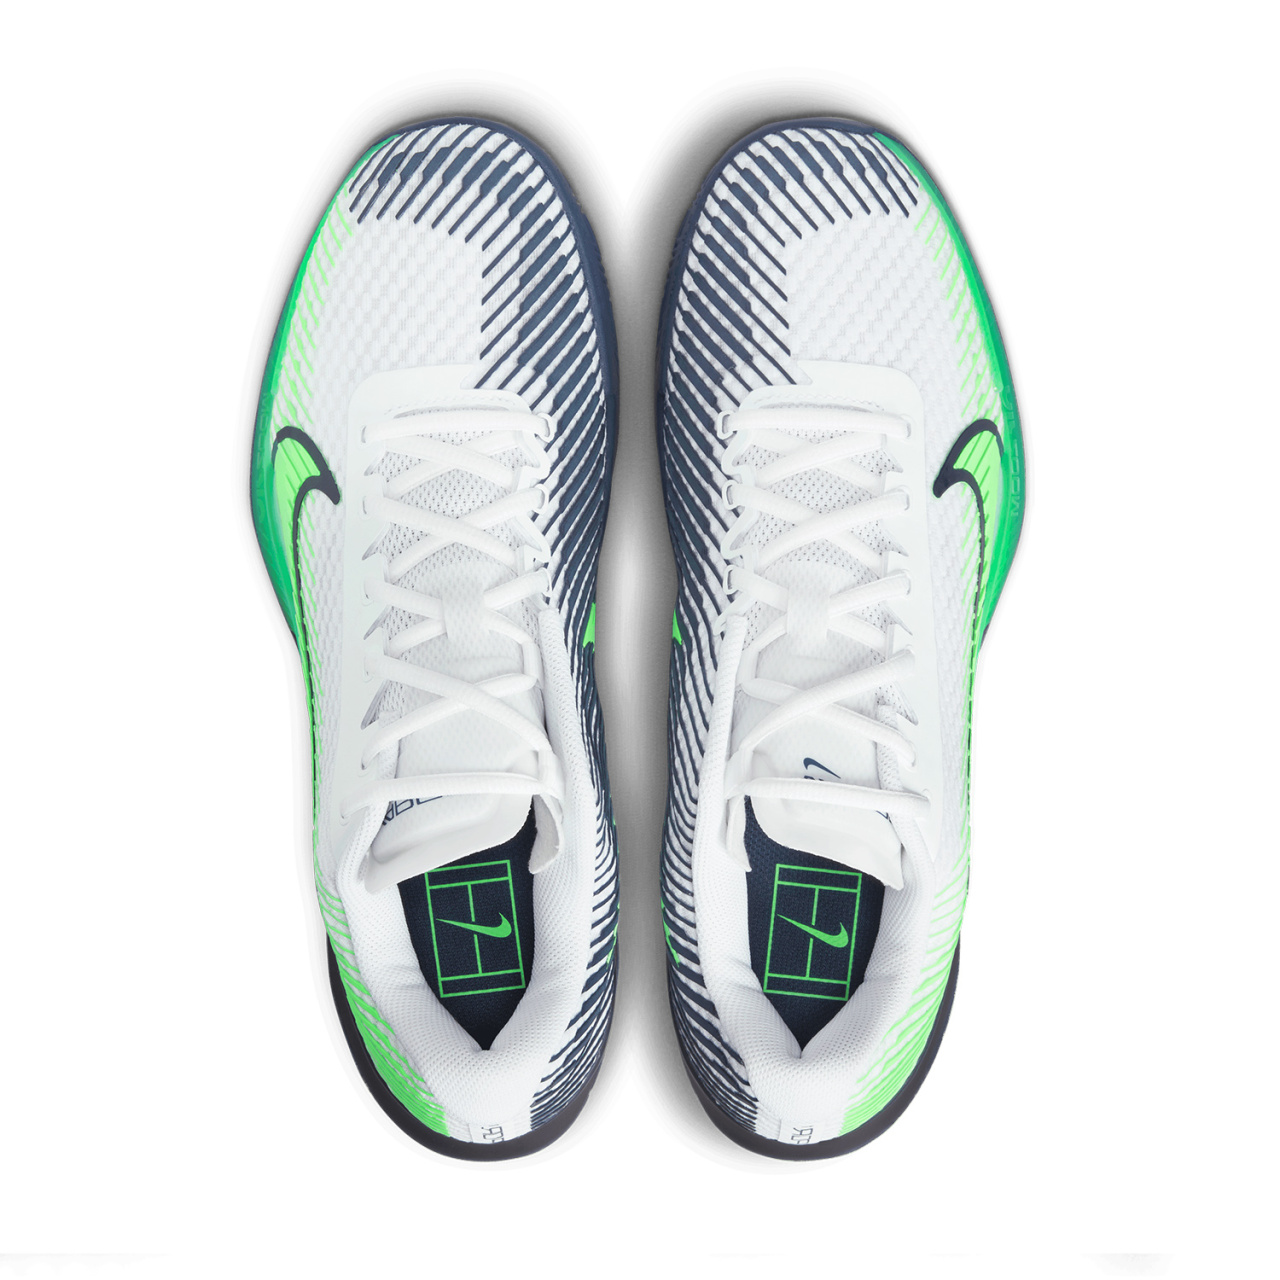 Теннисные кроссовки Nike М Zoom Vapor 11 CLY. Фото ¹5